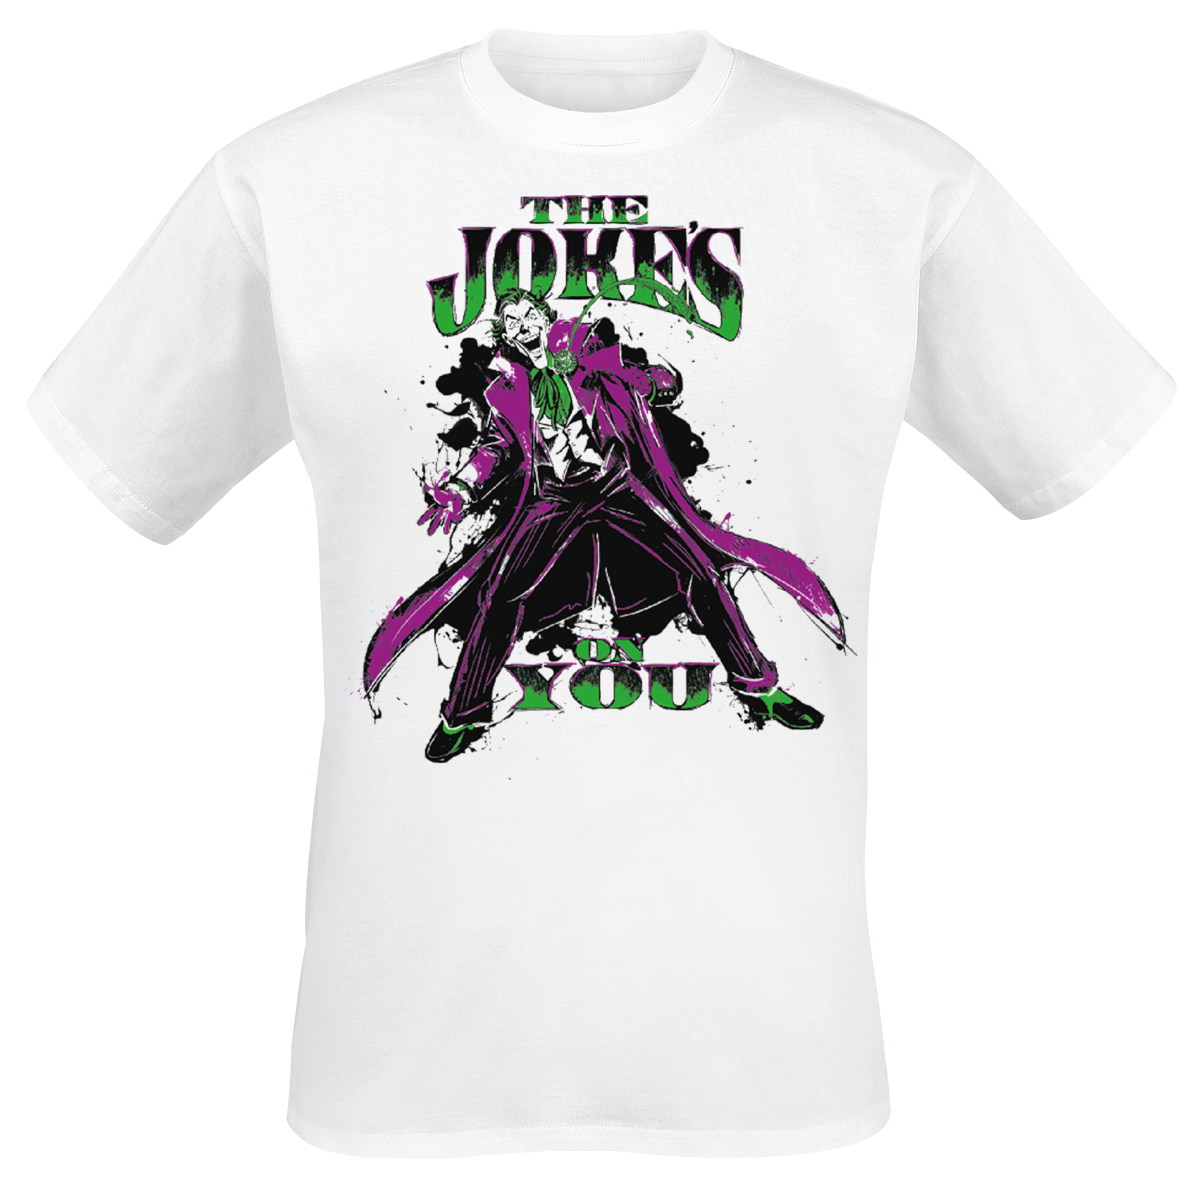 The Joker - The Joke's On You - T-Shirt - white image